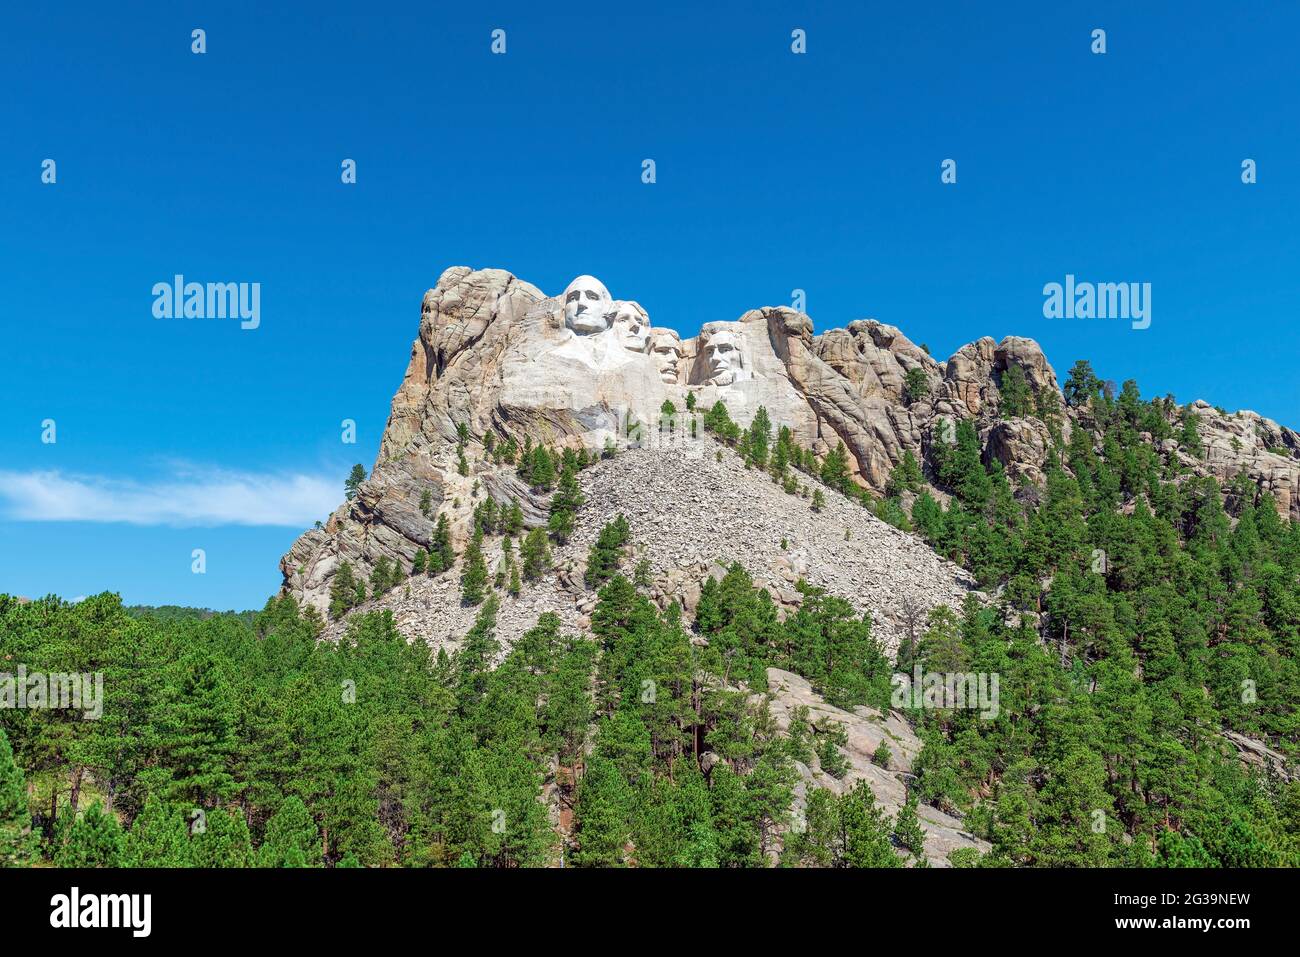 Mount Rushmore avec les présidents américains a sculpté des portraits en été, Dakota du Sud, États-Unis d'Amérique, États-Unis. Banque D'Images